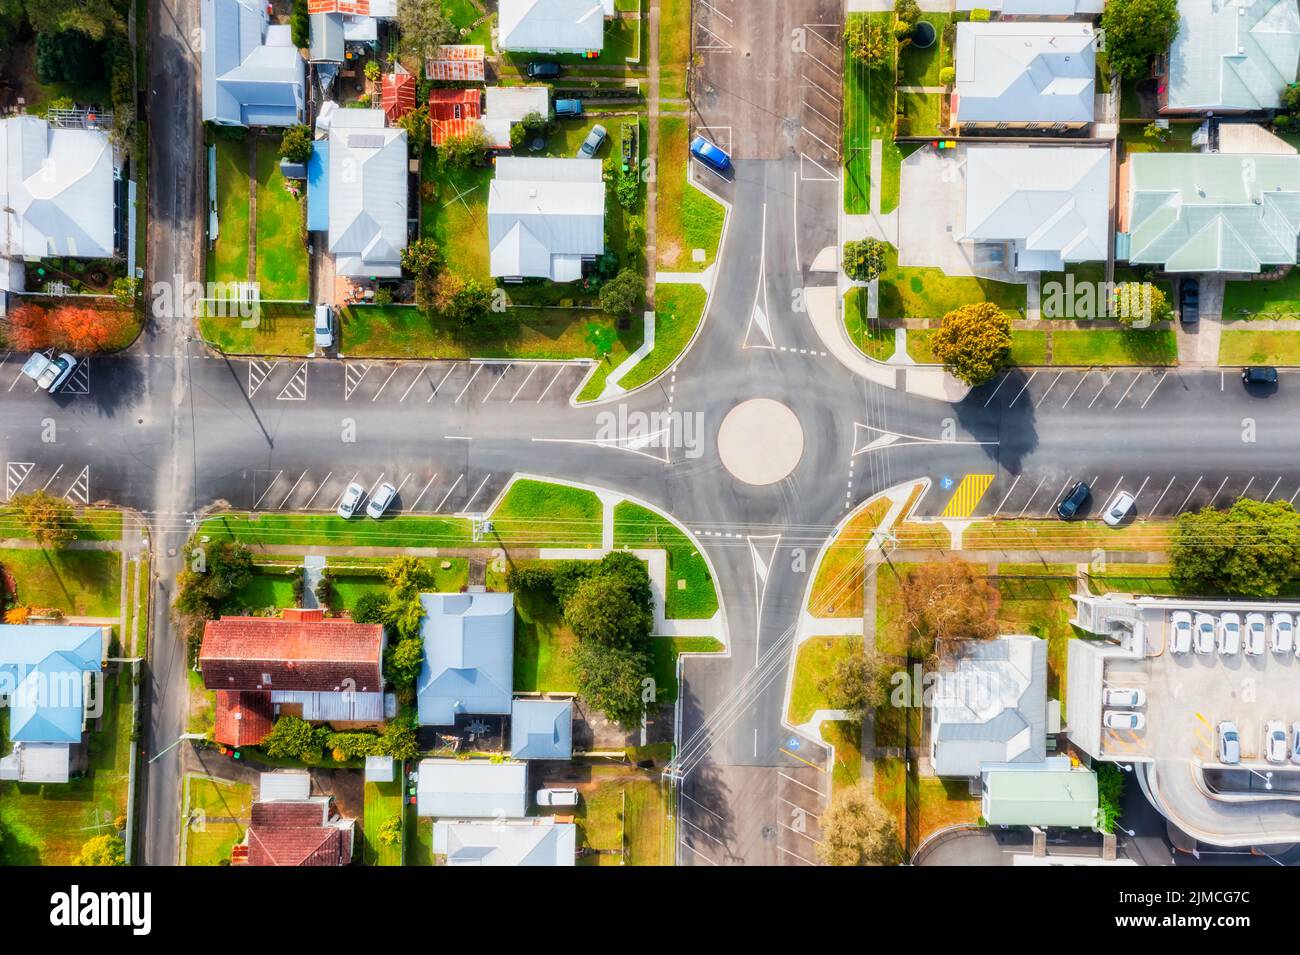 Rue calme et résidentielle de la ville de Taree en Australie - intersection et places de parking avec vue aérienne en haut. Banque D'Images